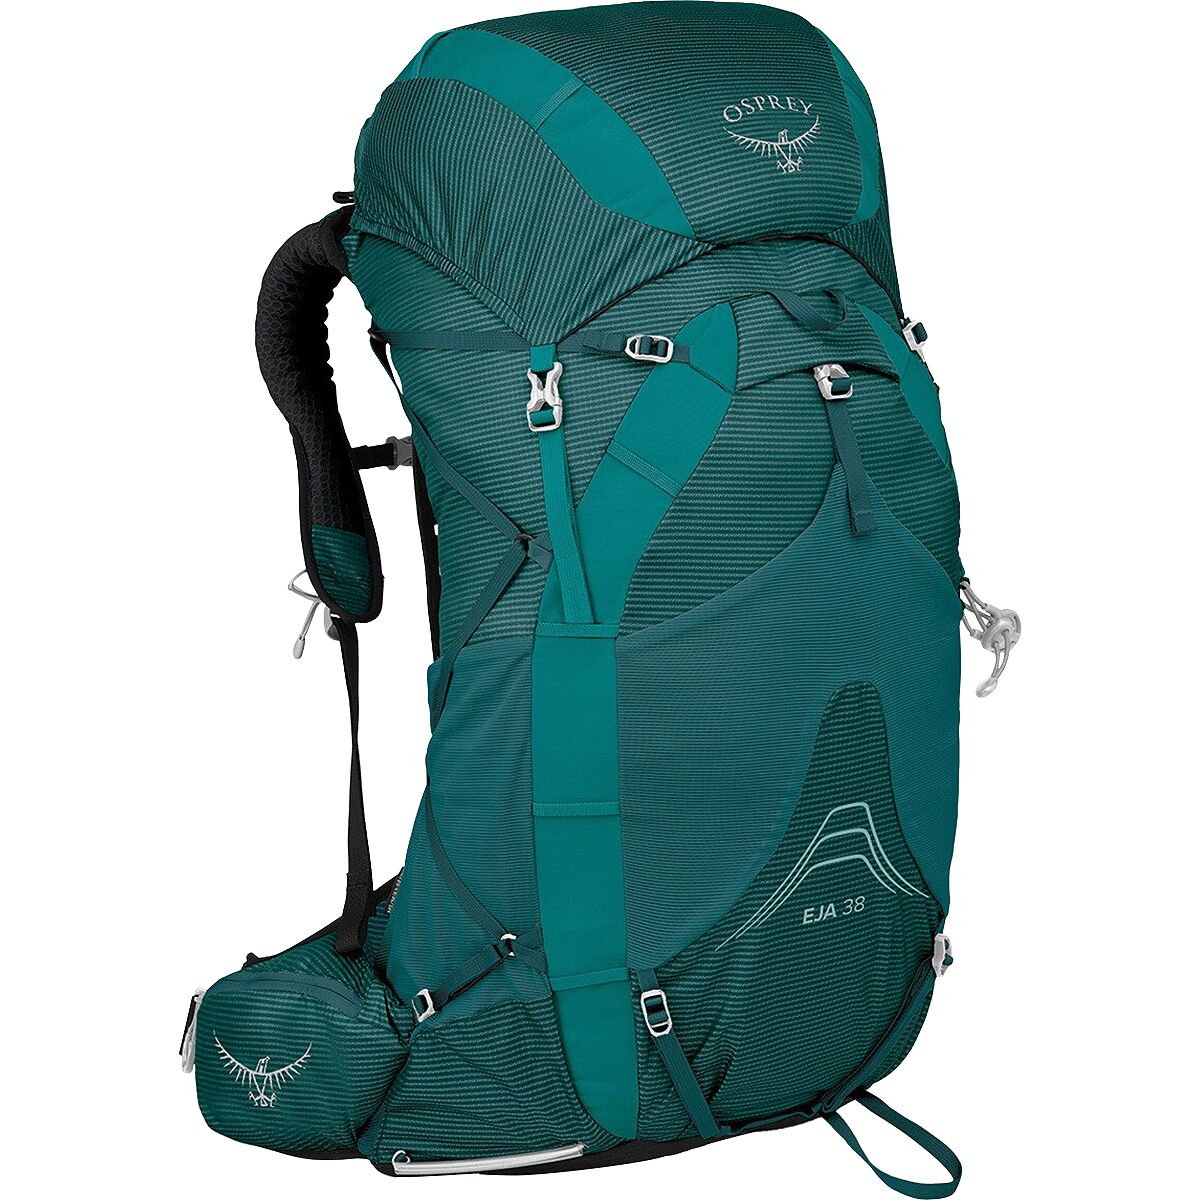 Osprey Packs Eja 38L Backpack - Women's